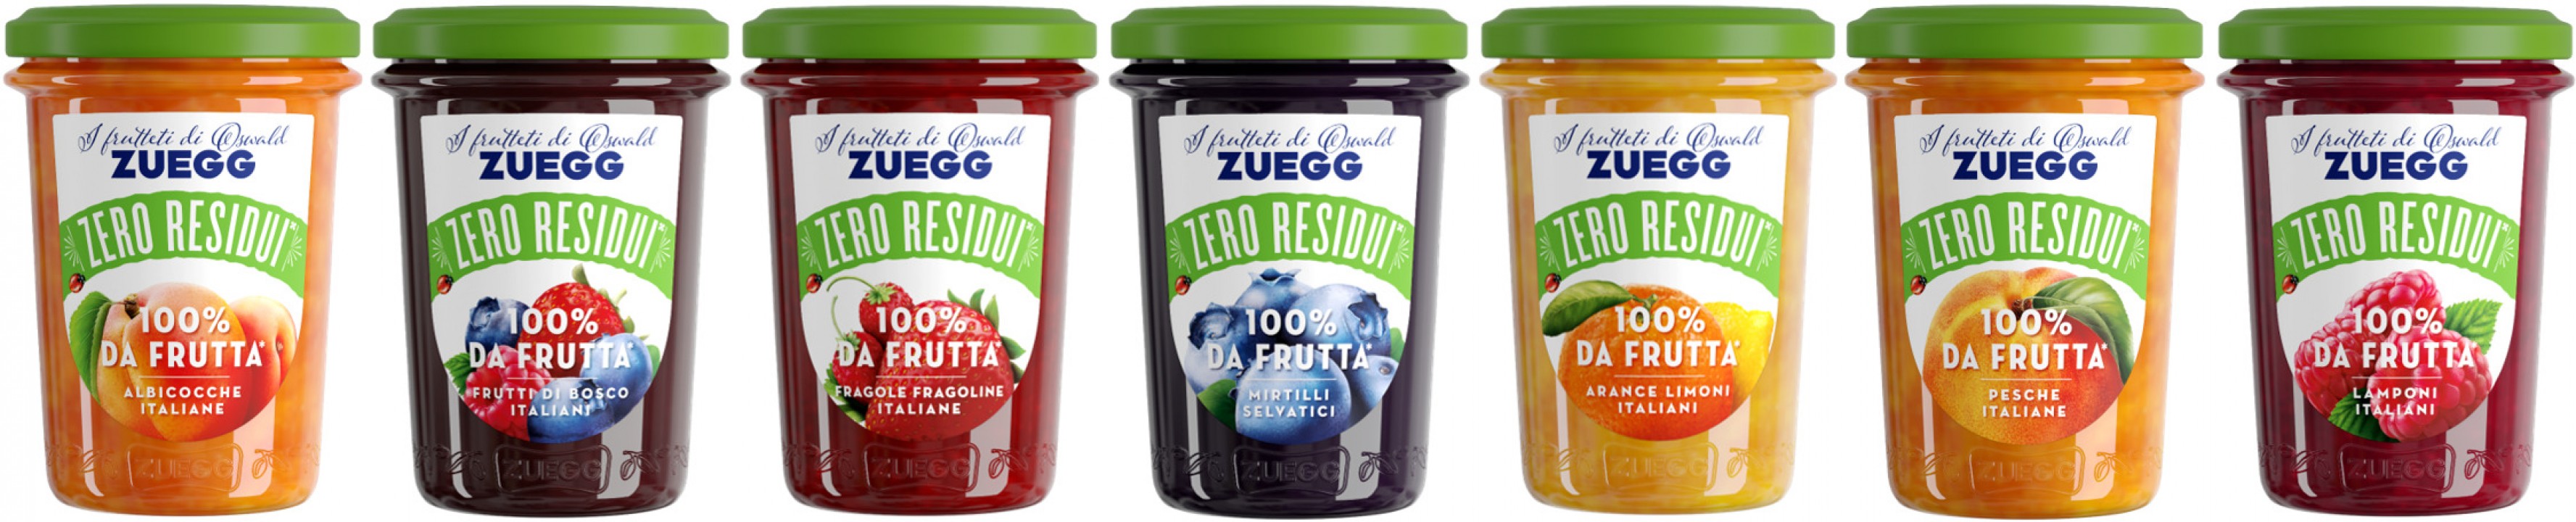 Arrivano le composte Zuegg “zero residui 100% da frutta”